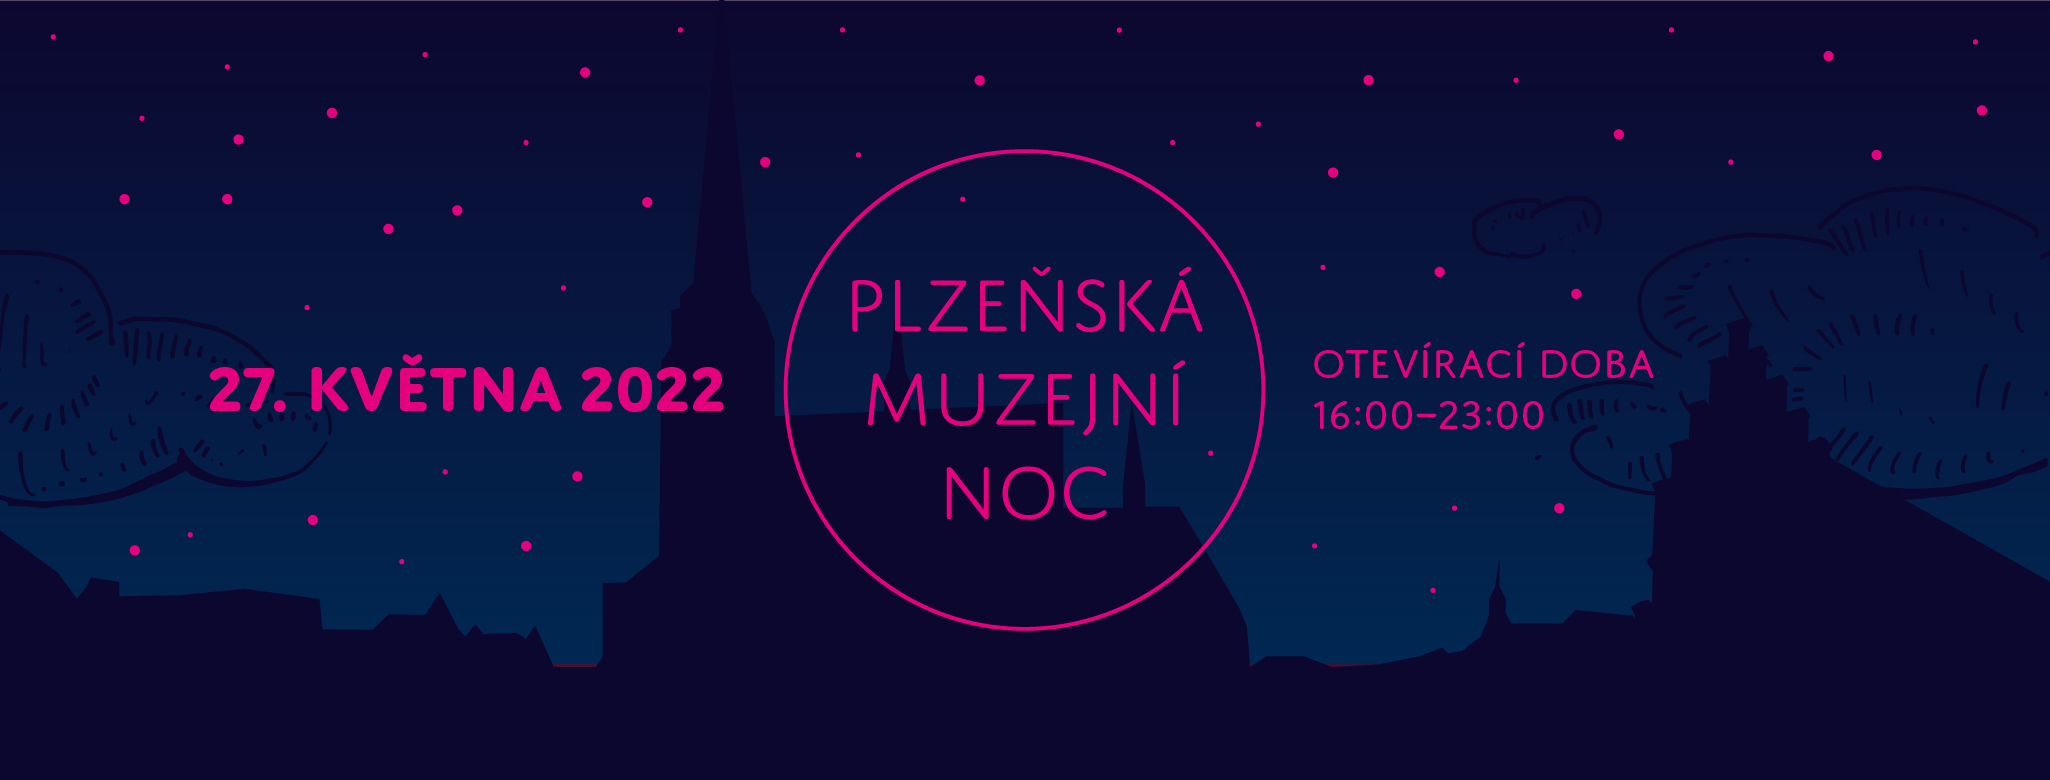 Plzeňská muzejní noc 2022